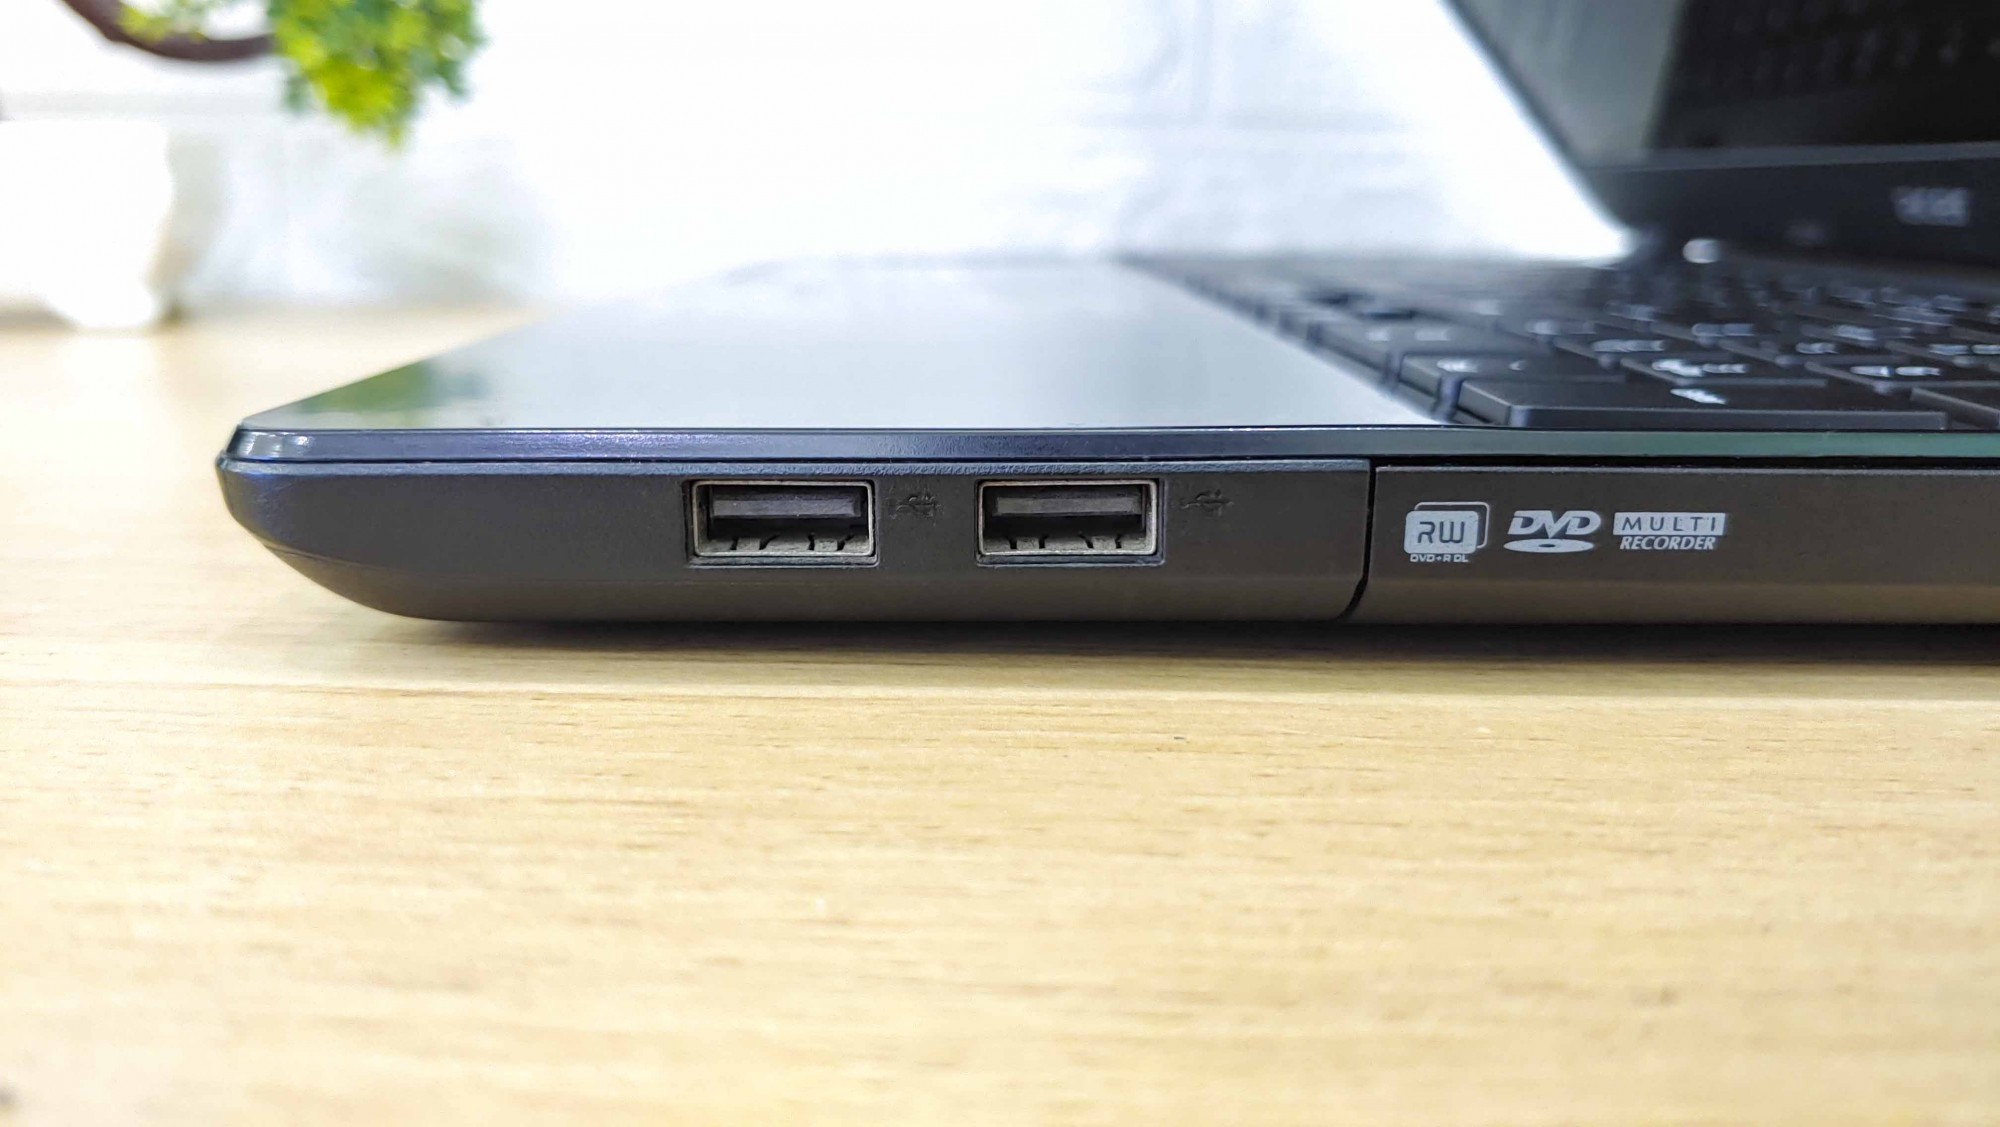 Laptop Acer E5-571